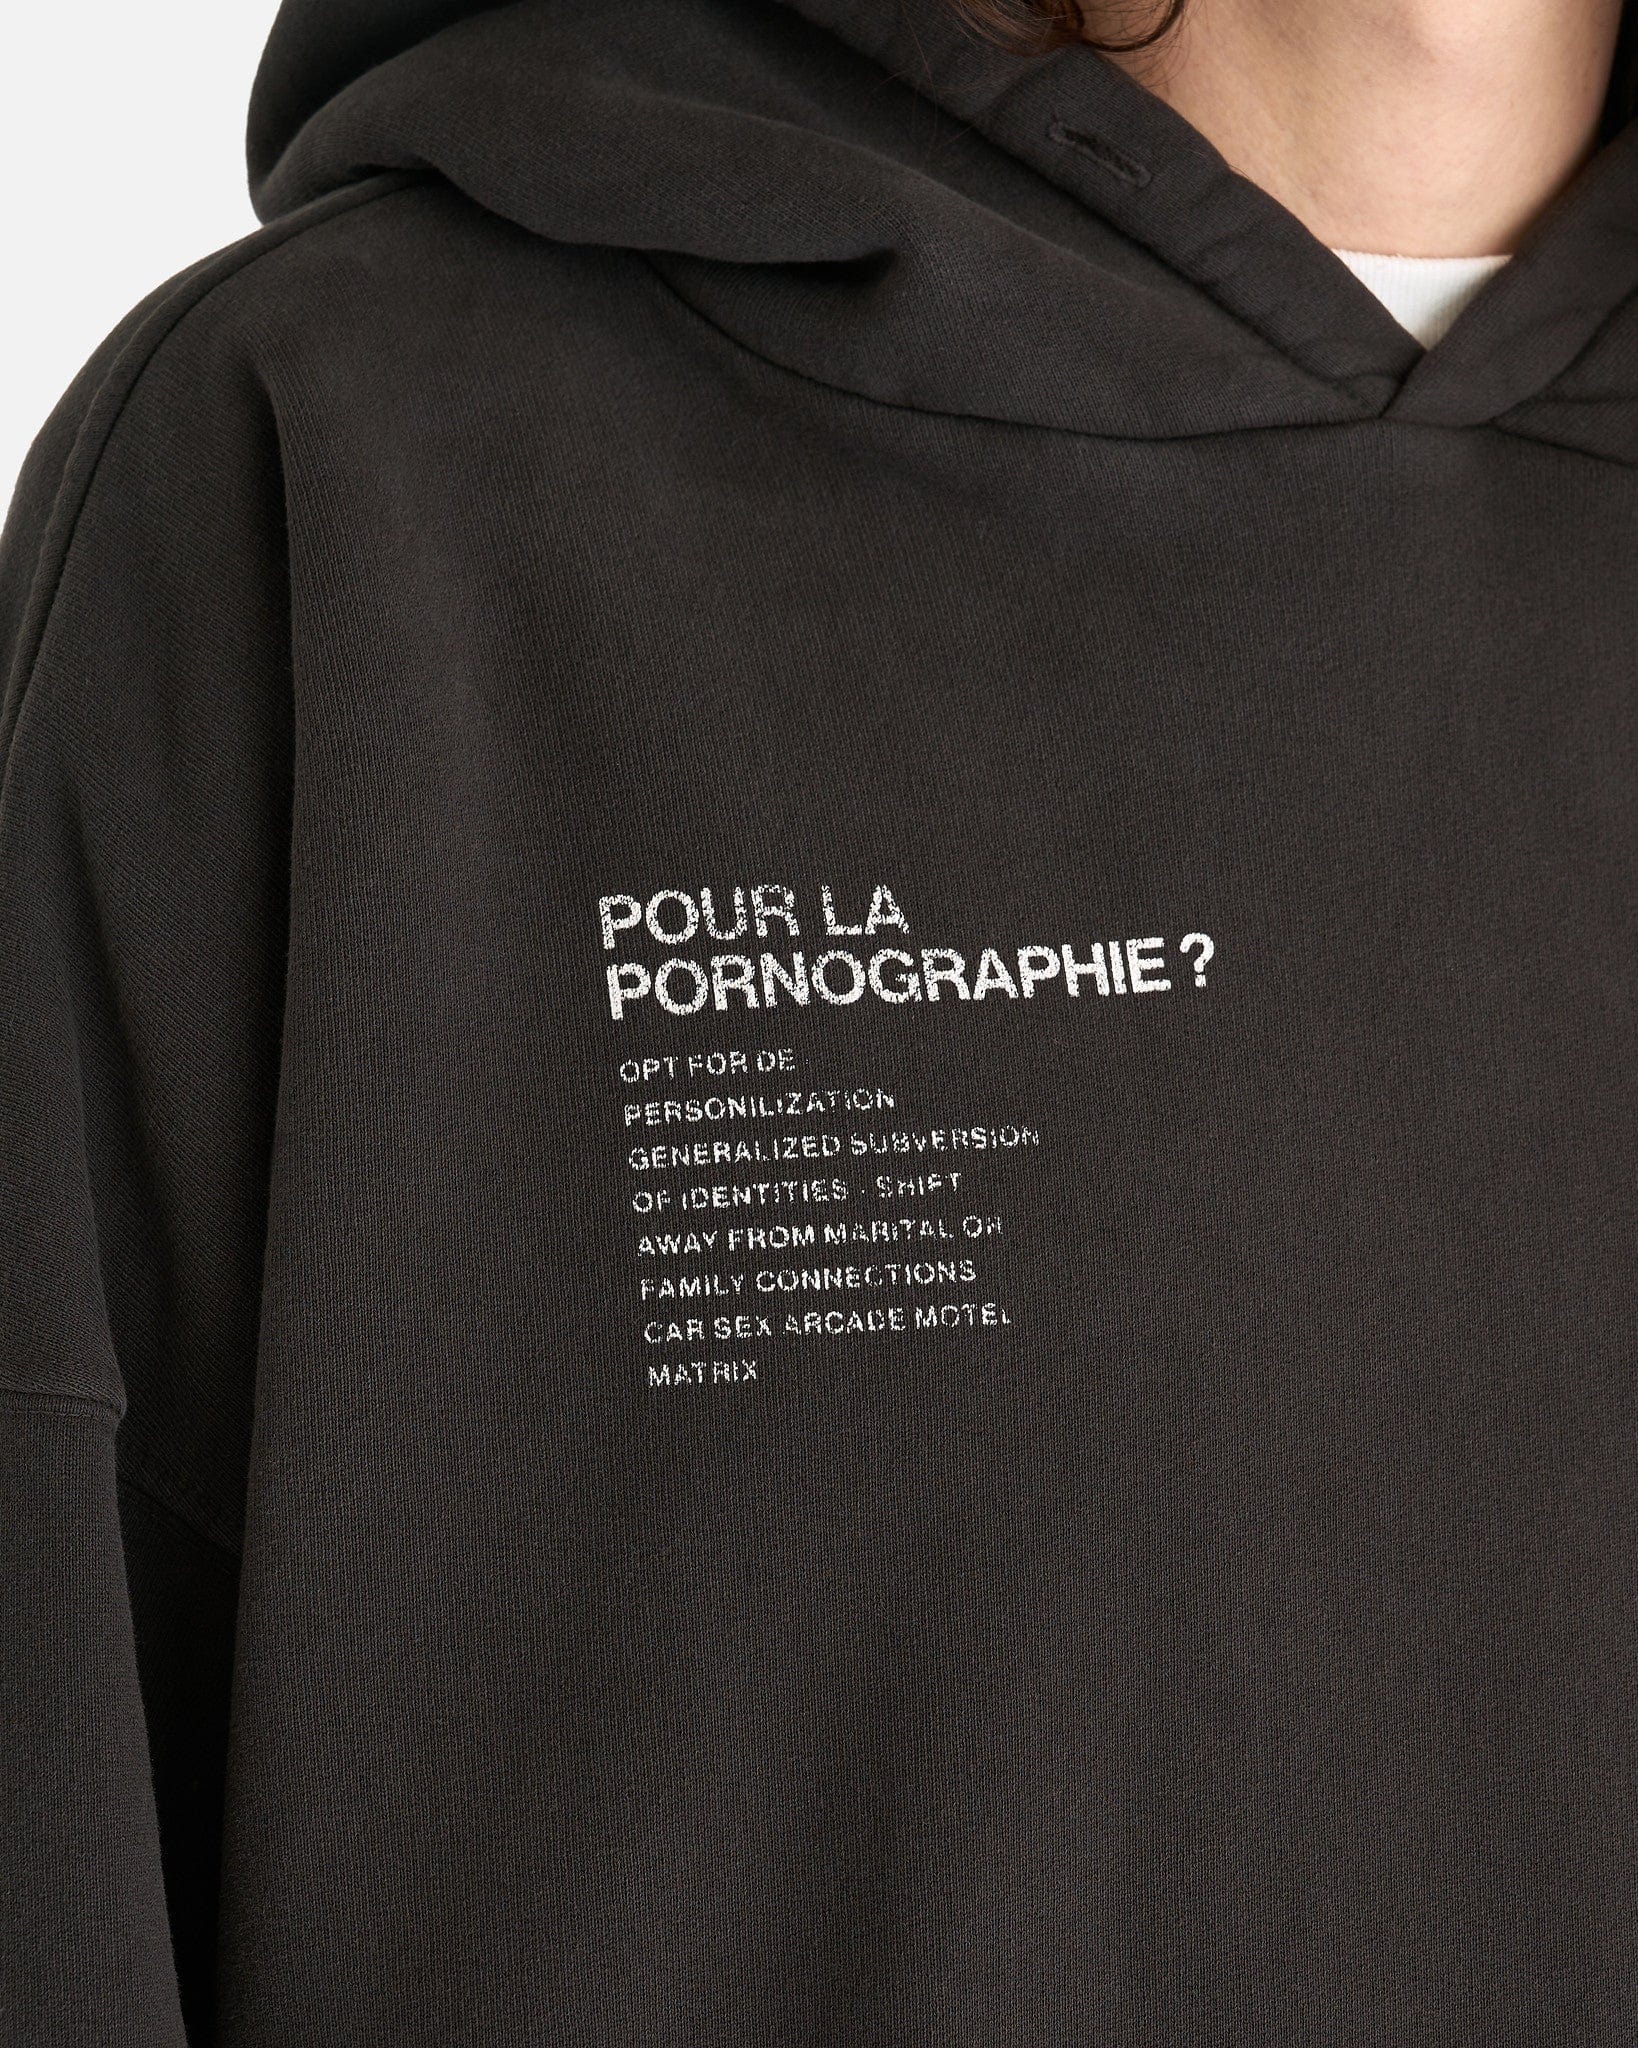 Enfants Riches Deprimes Men's Sweatshirts Pour La Pornographie? Hoodie in Faded Black/White